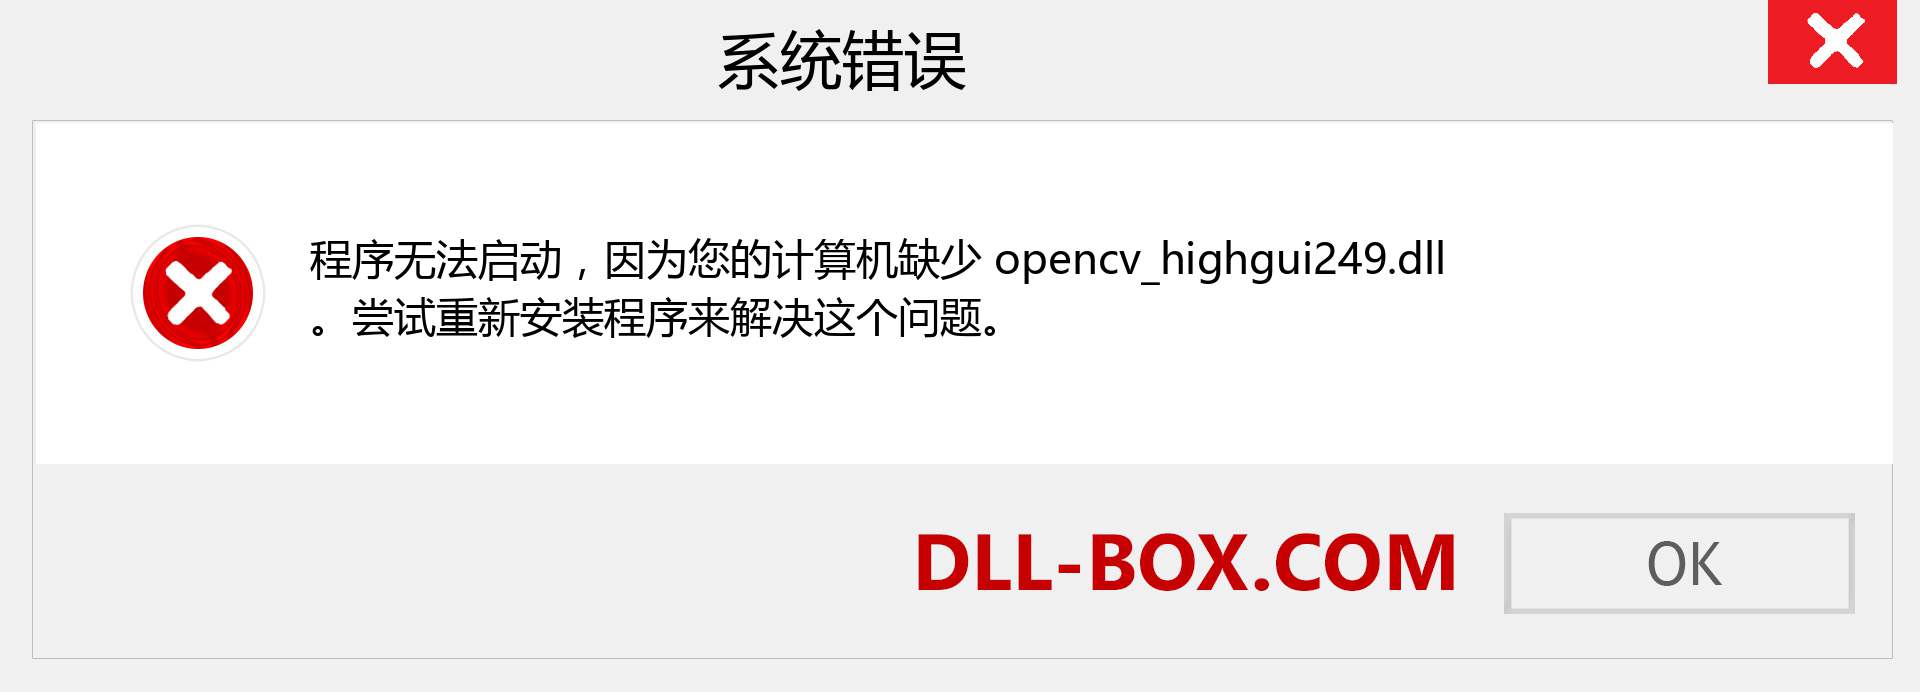 opencv_highgui249.dll 文件丢失？。 适用于 Windows 7、8、10 的下载 - 修复 Windows、照片、图像上的 opencv_highgui249 dll 丢失错误